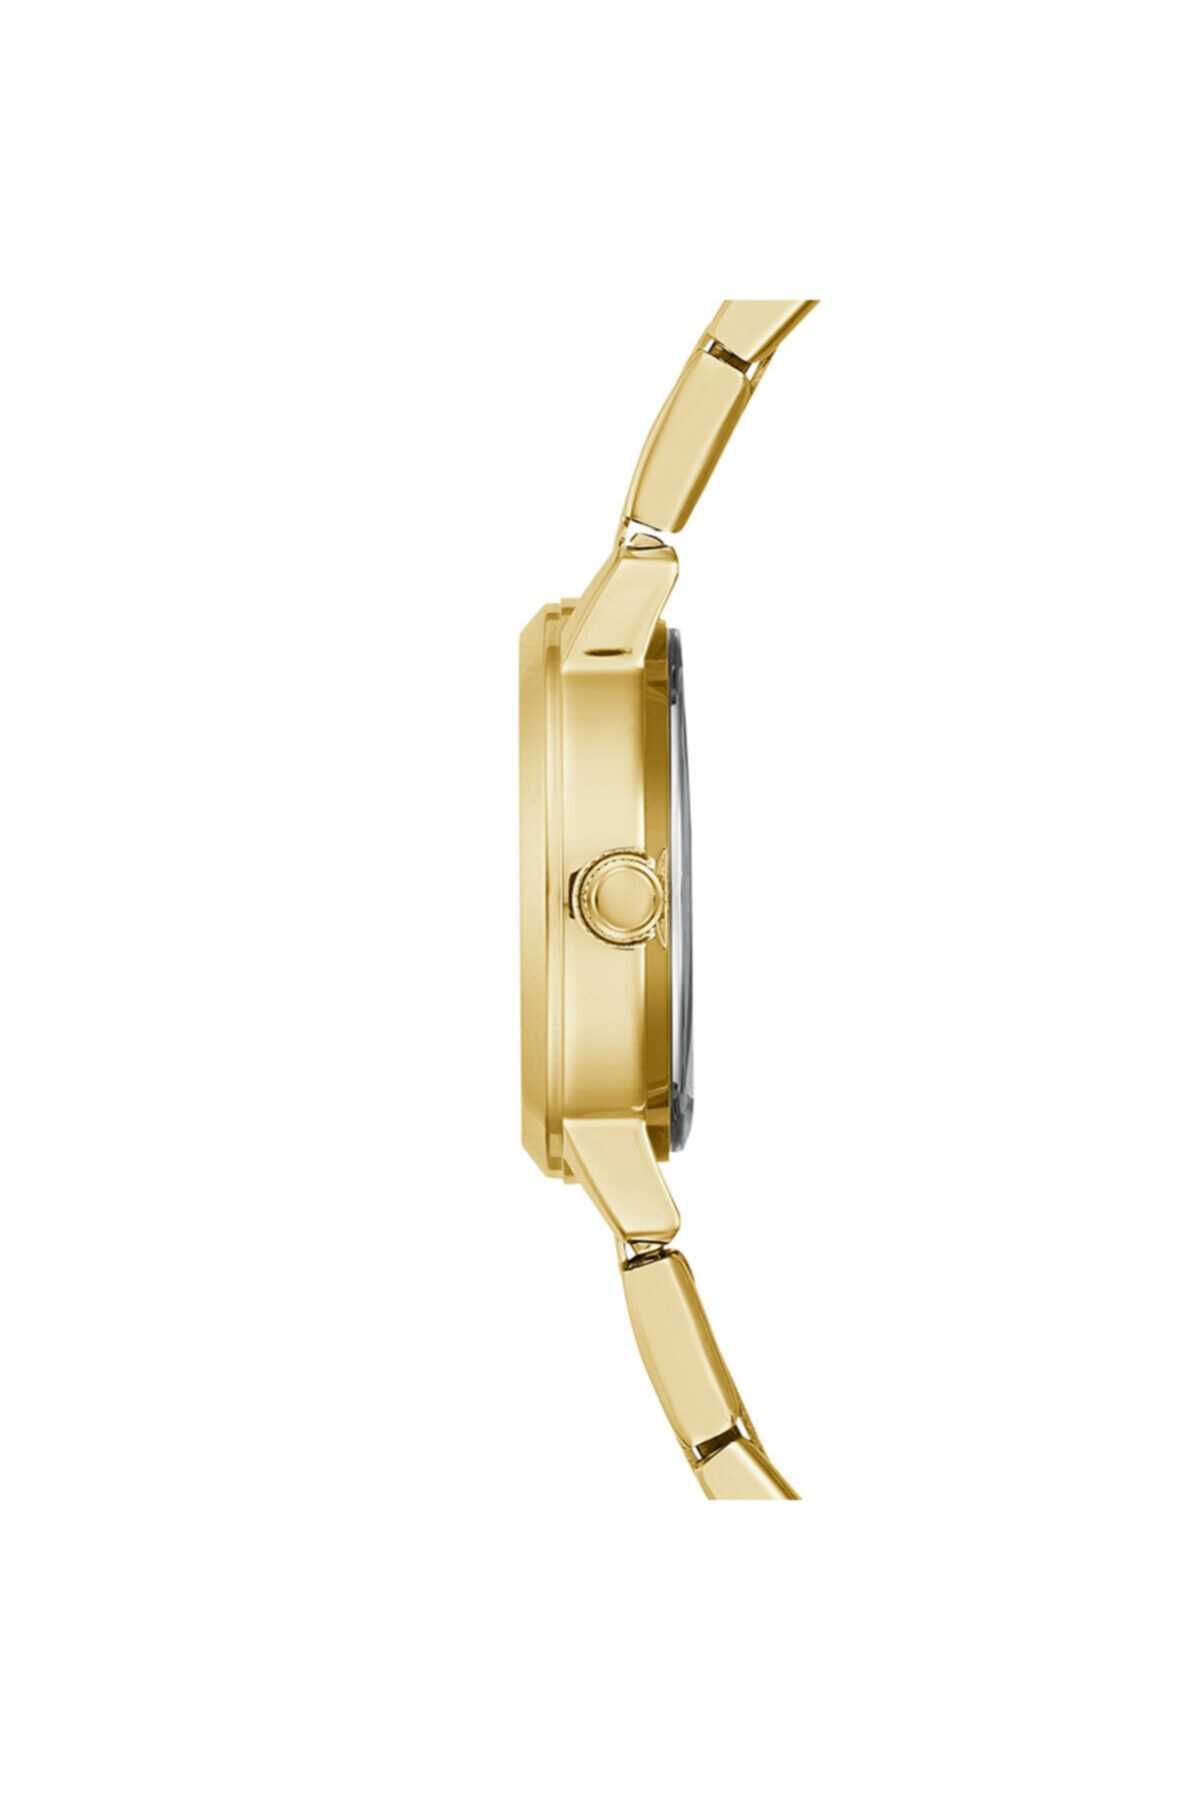 خرید نقدی ساعت زنانه برند Guess رنگ طلایی ty85913489